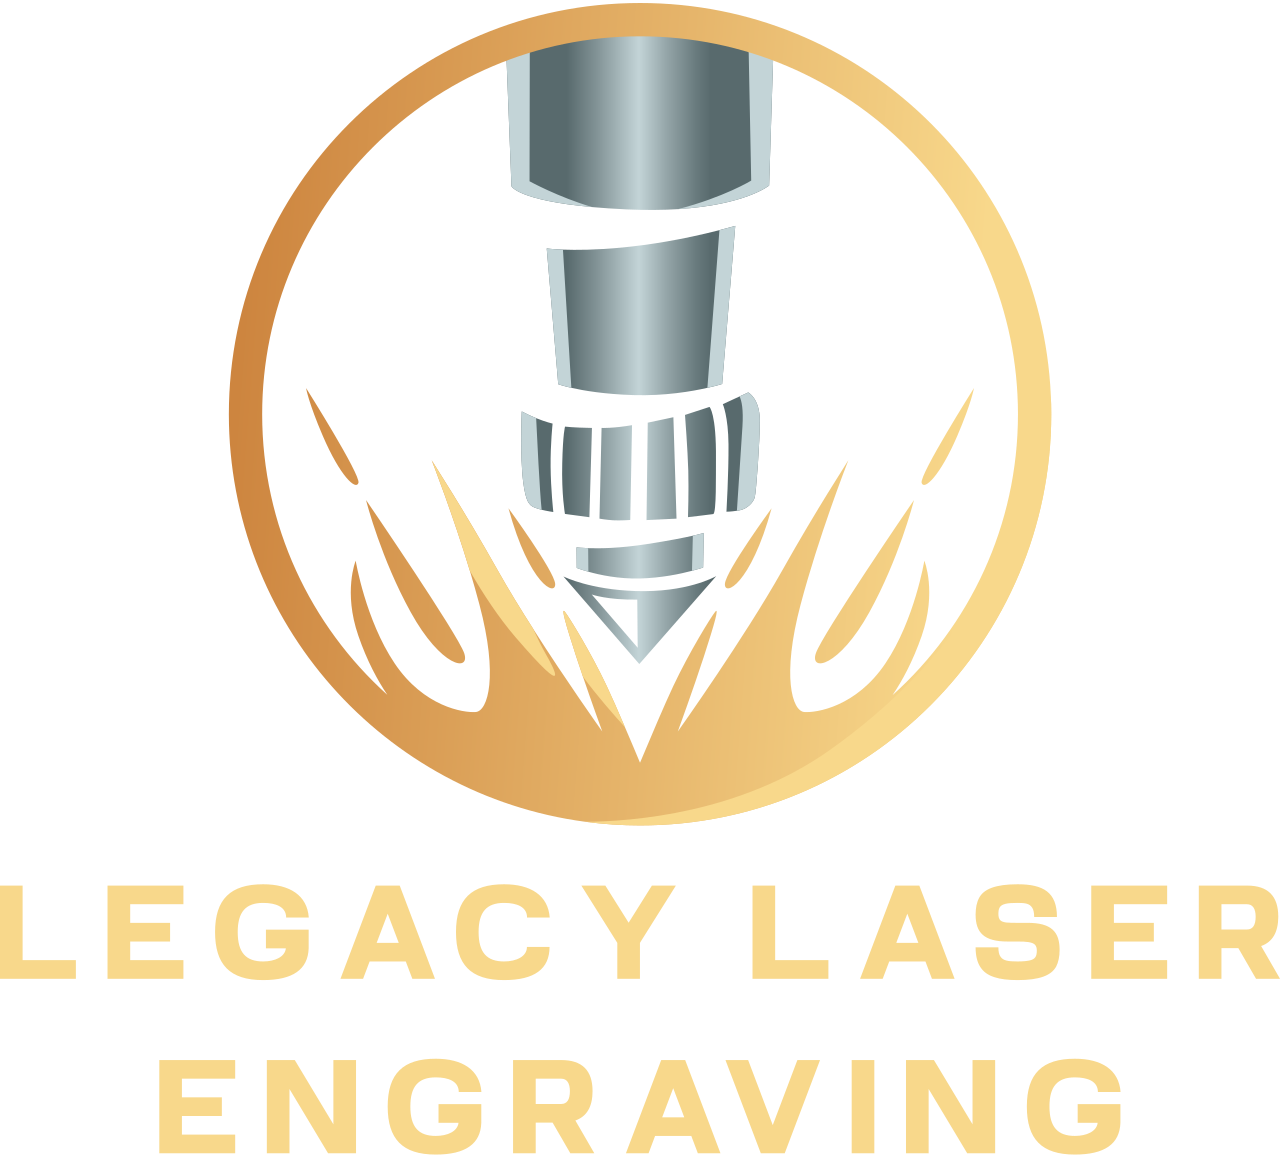 Legacy Laser
Engraving's logo